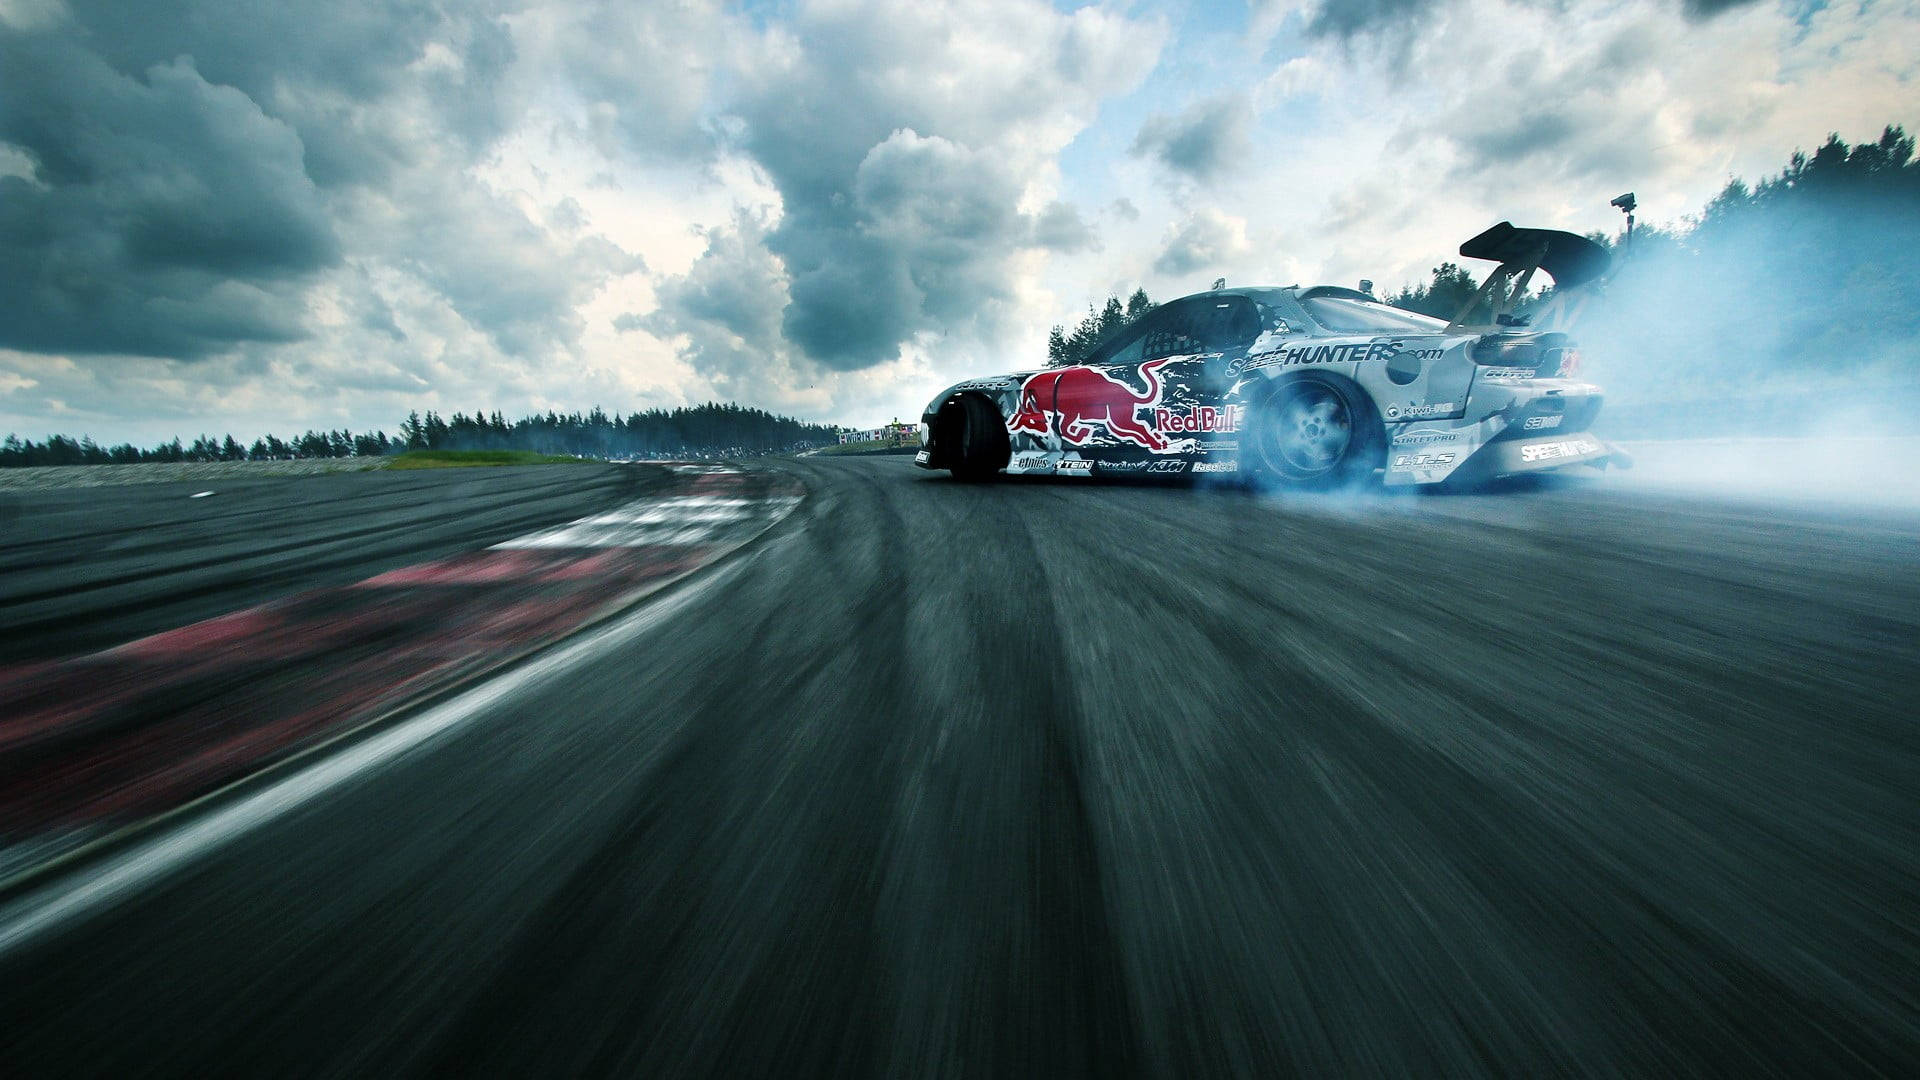 Drift Cars Red Bull Sponsored Wallpaper